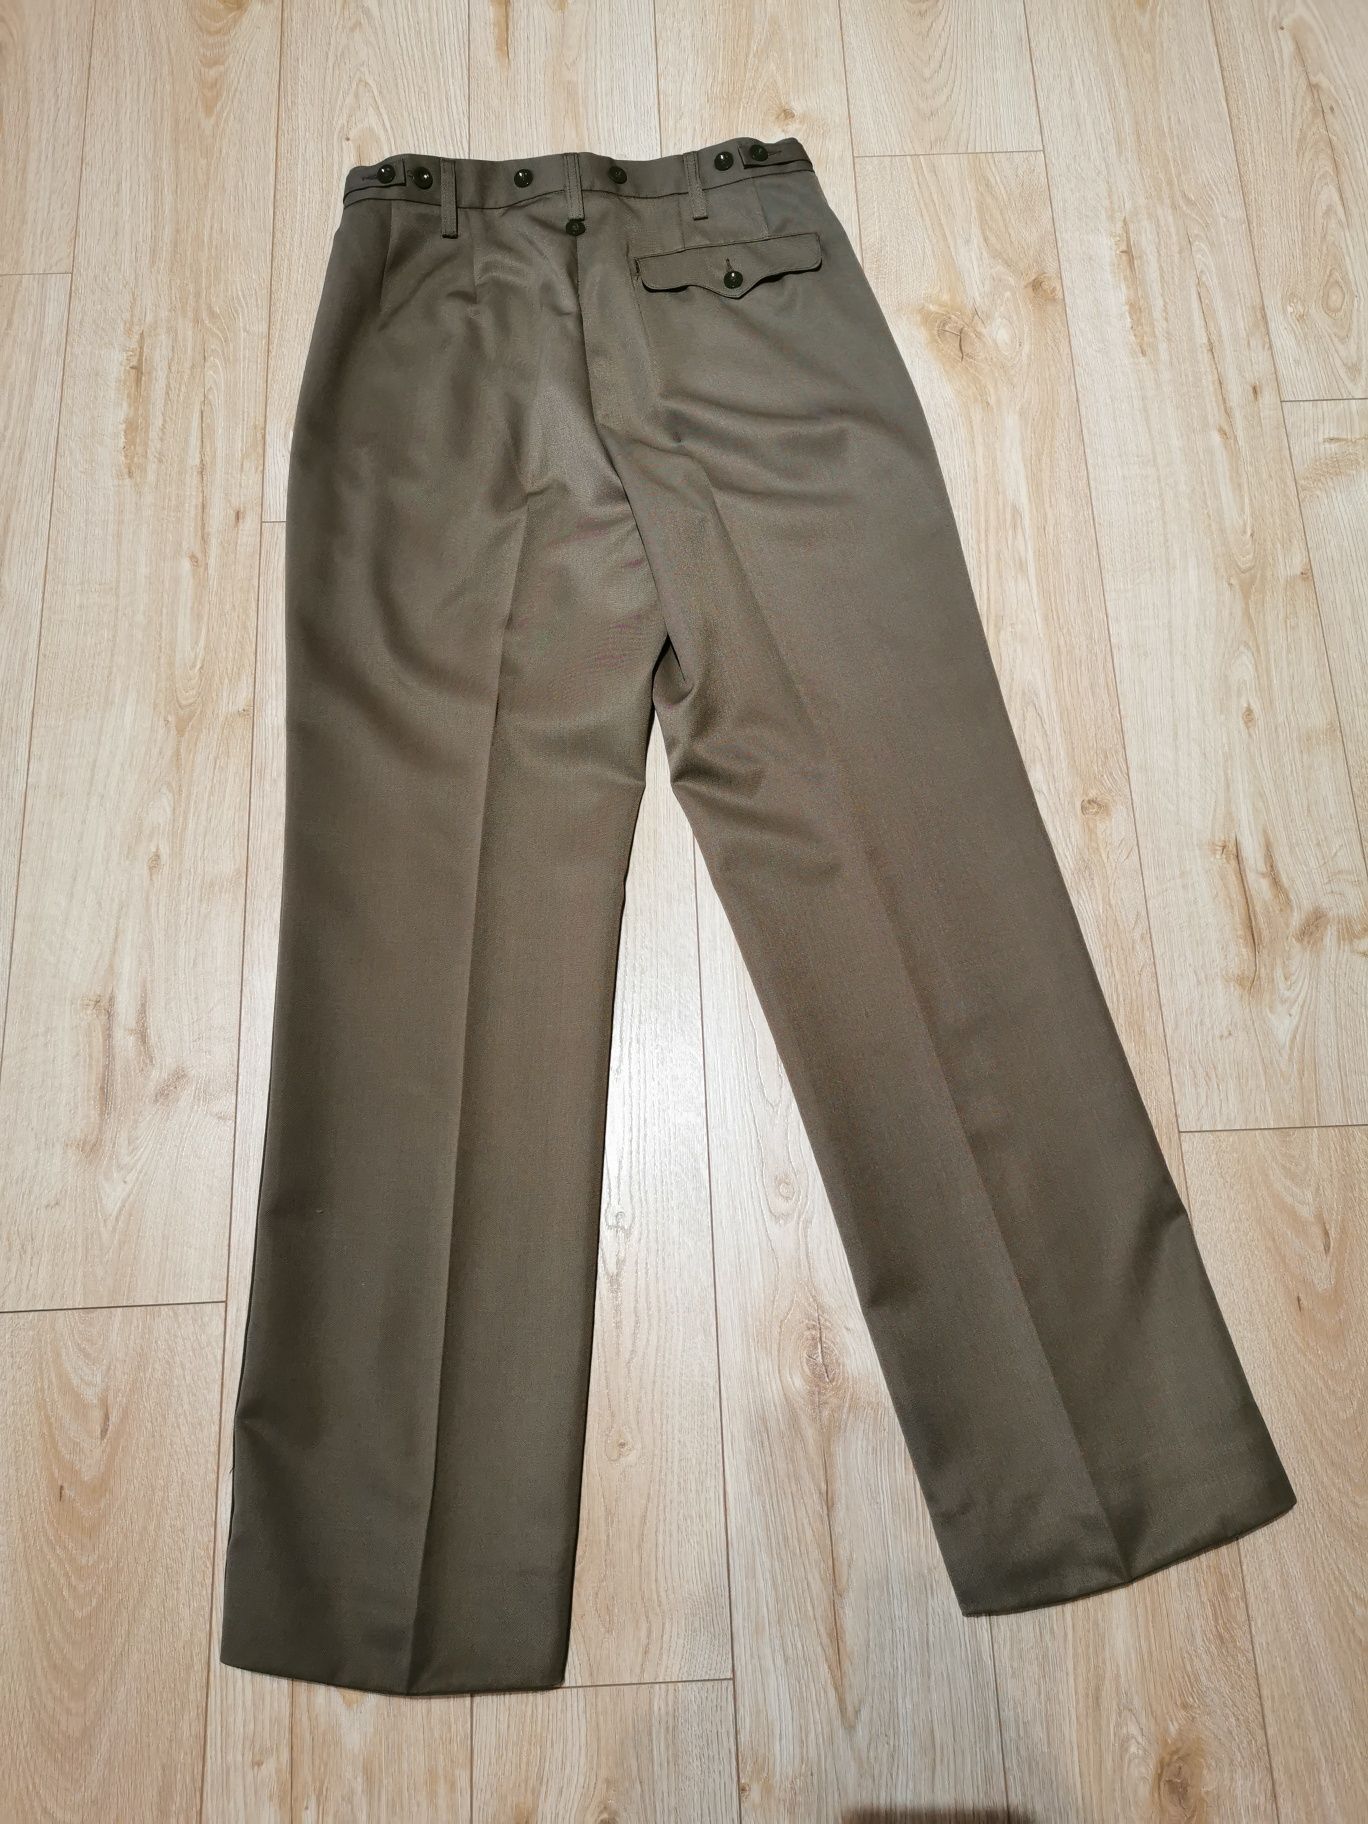 Spodnie od munduru wyjściowego WP, galowe wz103A/MON, 175/84